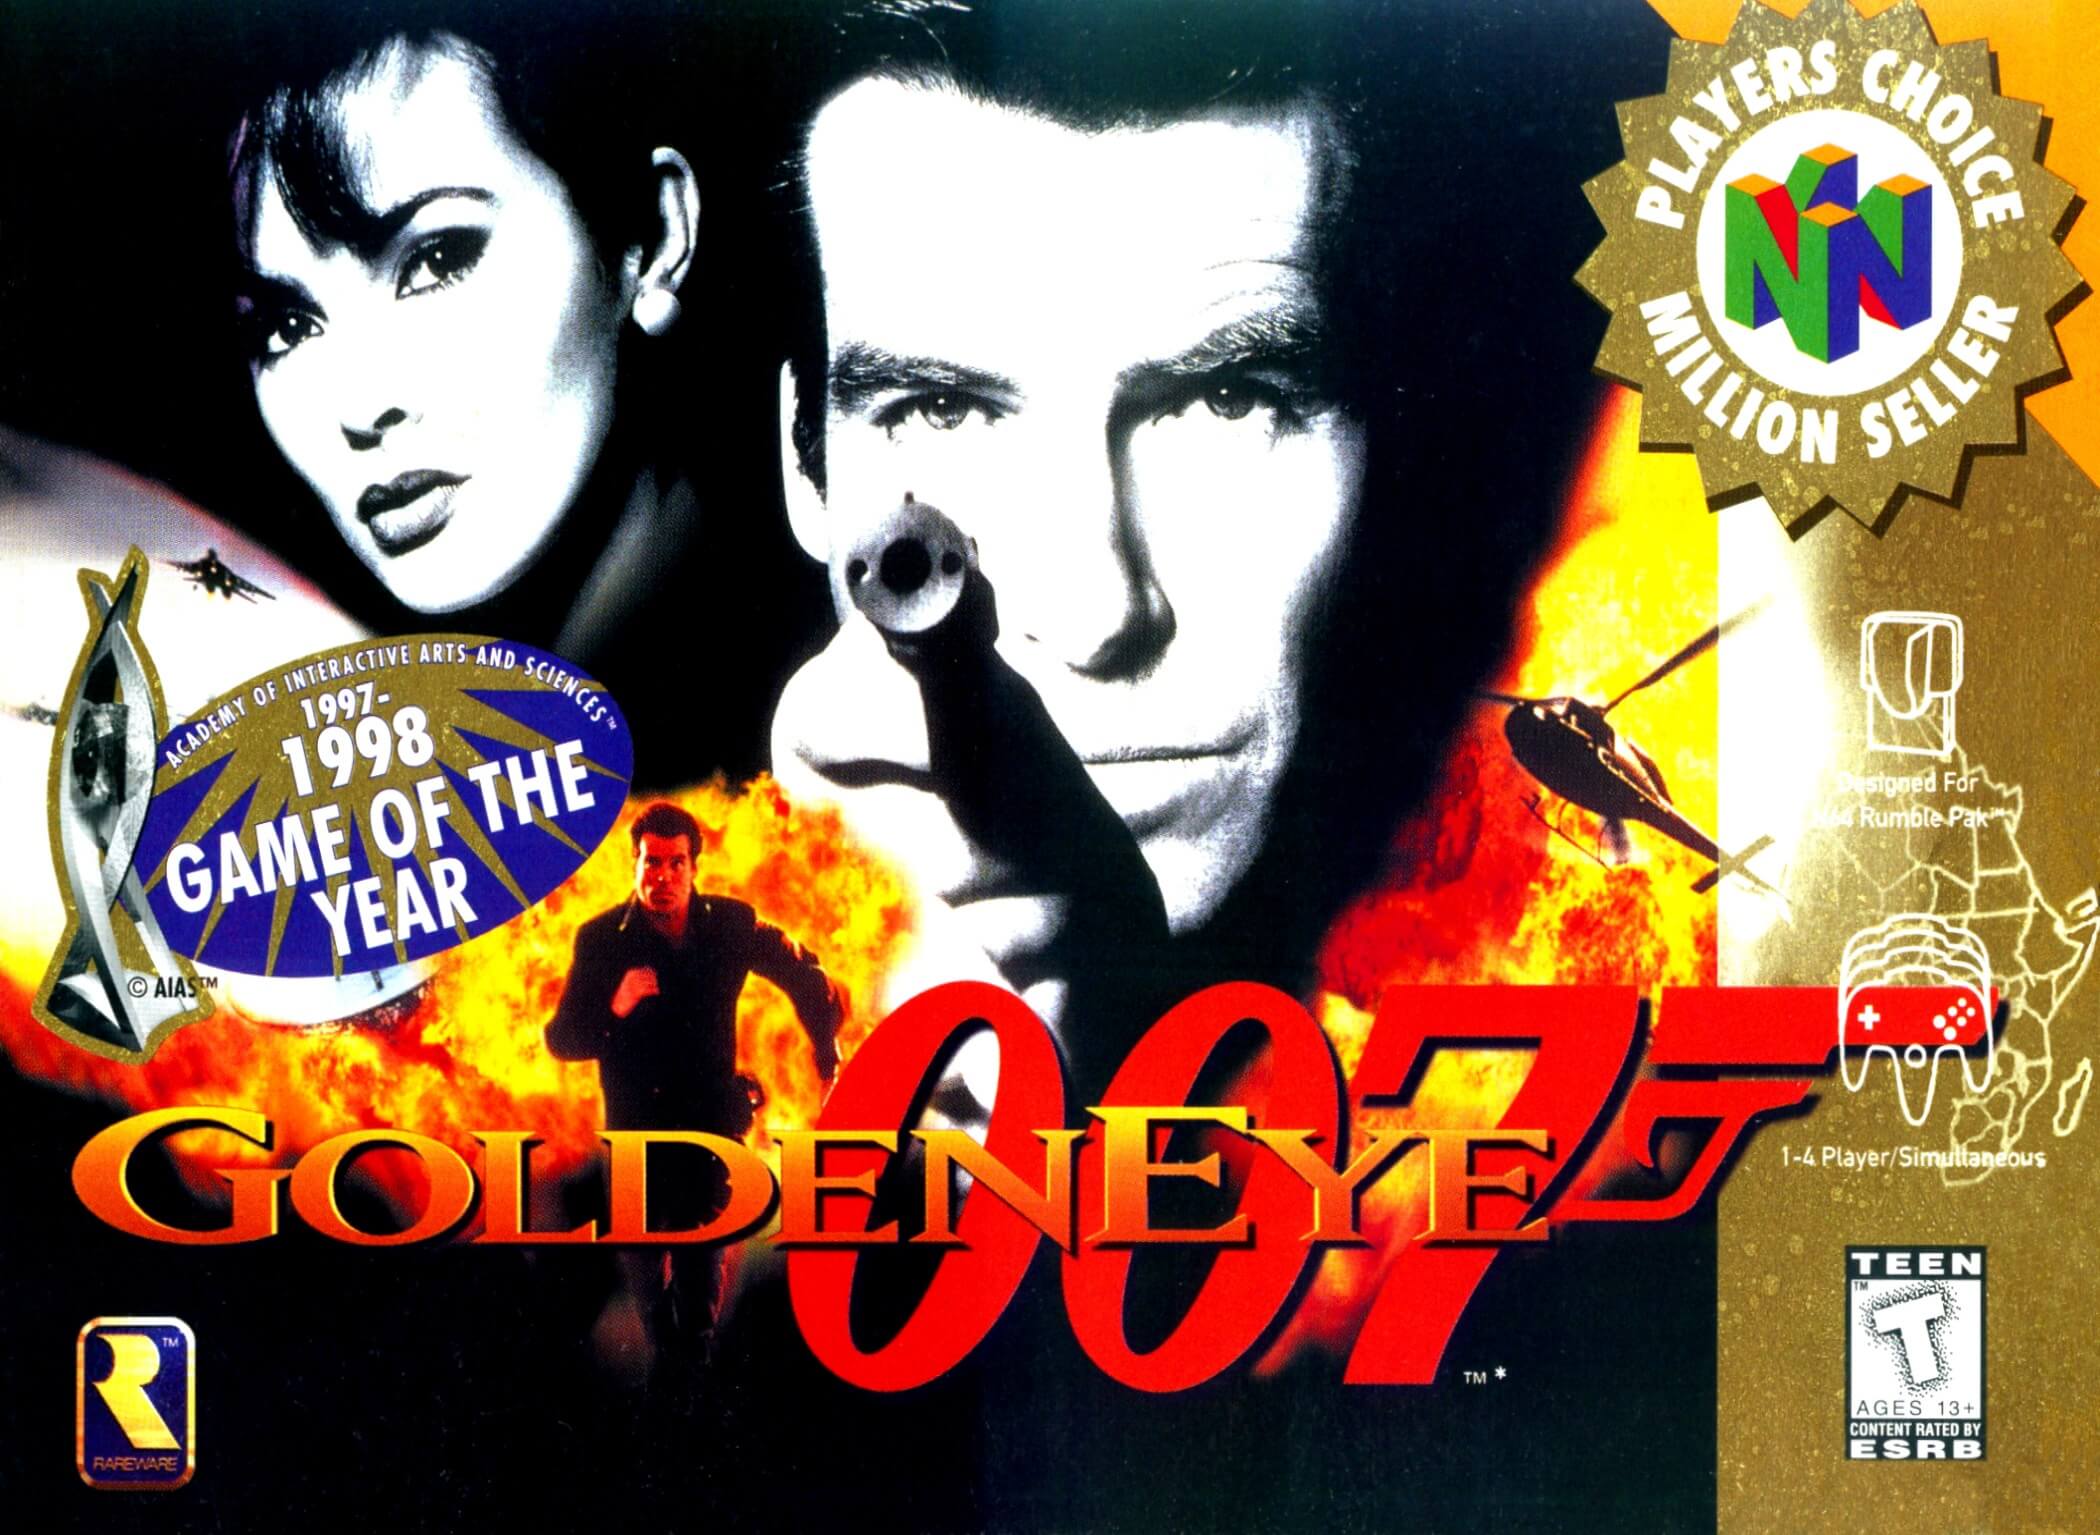 GoldenEye 007 ROM - Nintendo 64 (N64) Download - HappyRoms